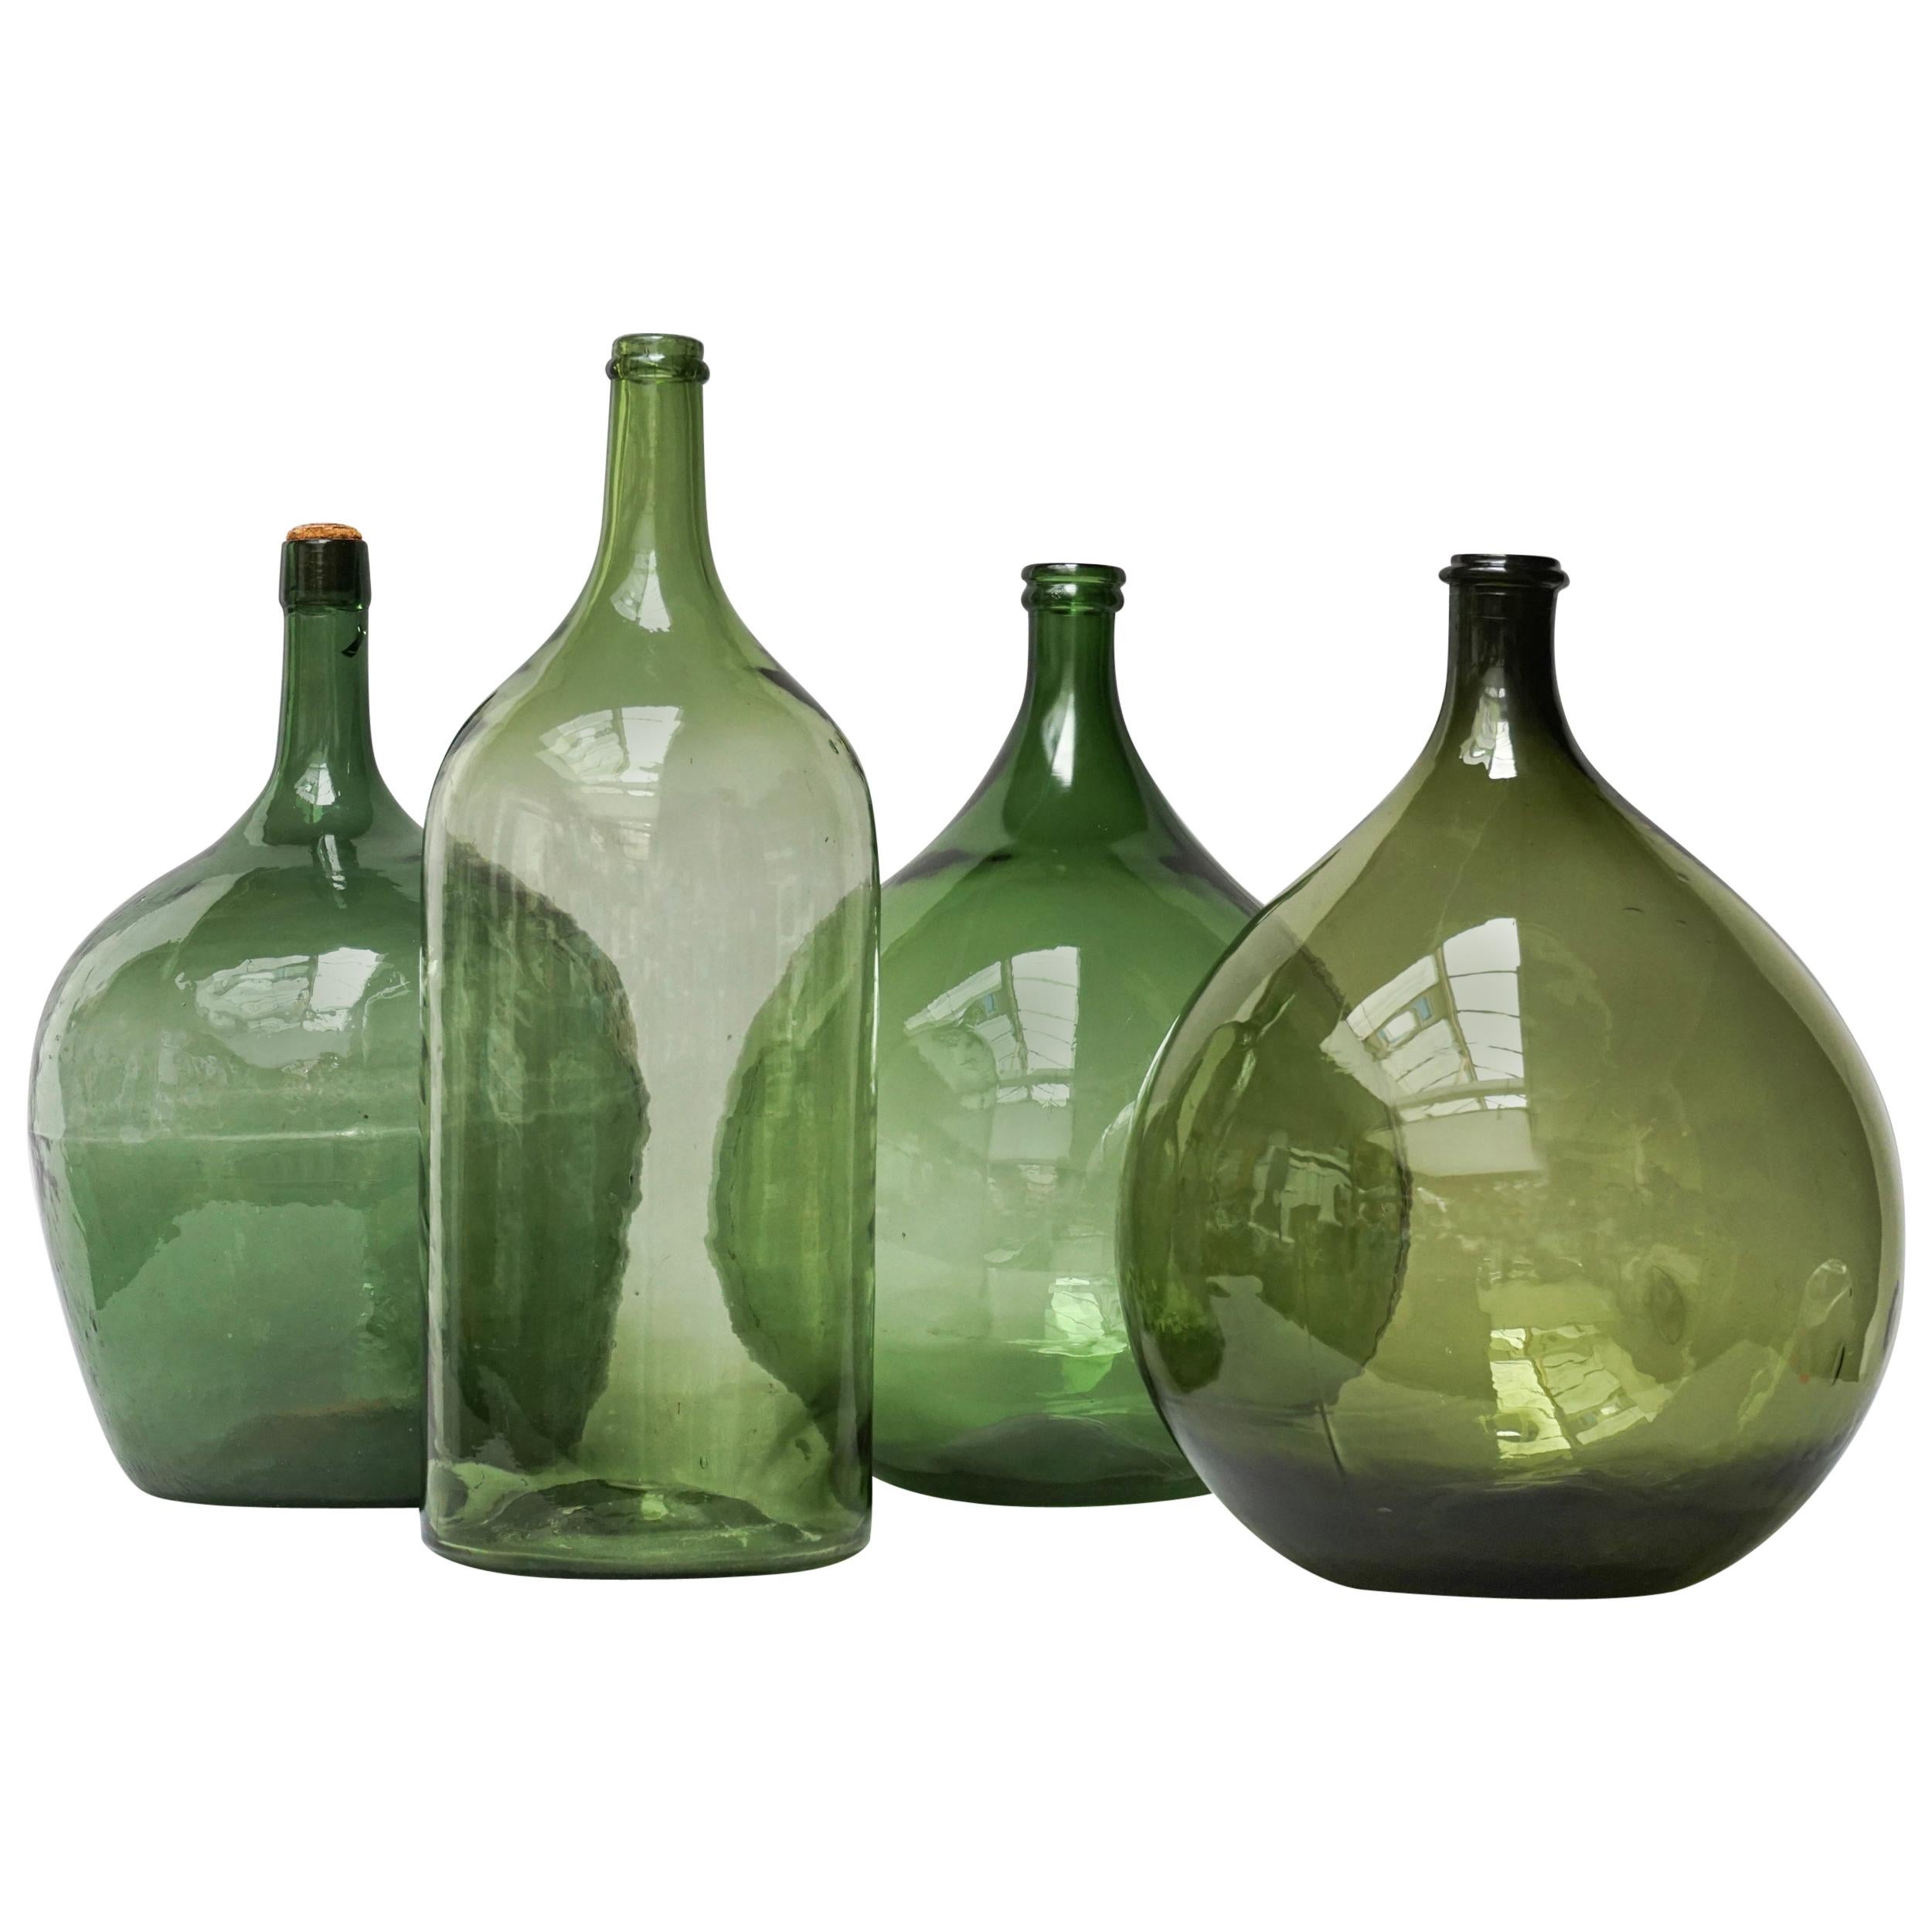 https://a.1stdibscdn.com/set-of-four-vintage-green-glass-bottles-demijohns-lady-jeanne-or-carboys-for-sale/1121189/f_153976621562985157938/15397662_master.jpg